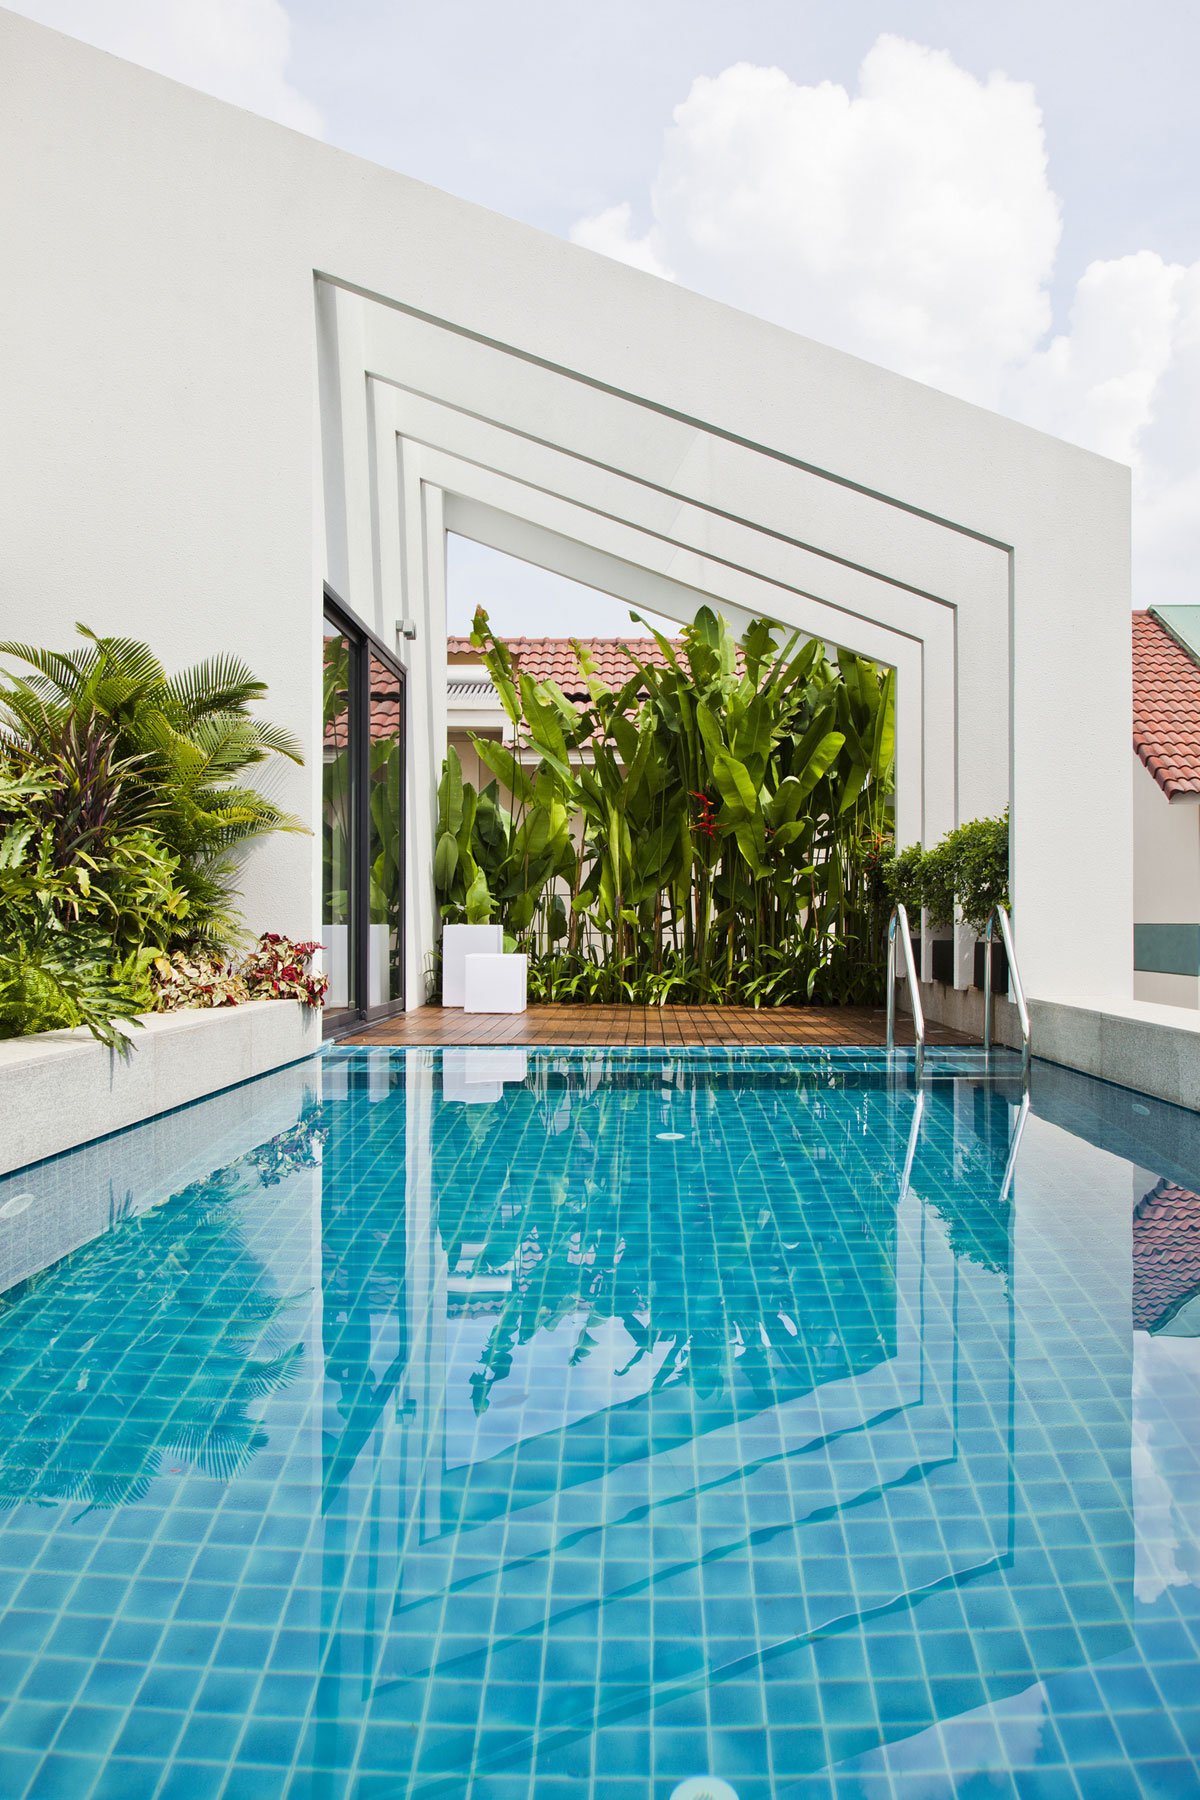 Nha Dan Architect, дома во Вьетнаме, особняки Вьетнам, бассейн на крыше дома, бассейн в частном доме фото, элитная недвижимость Вьетнам